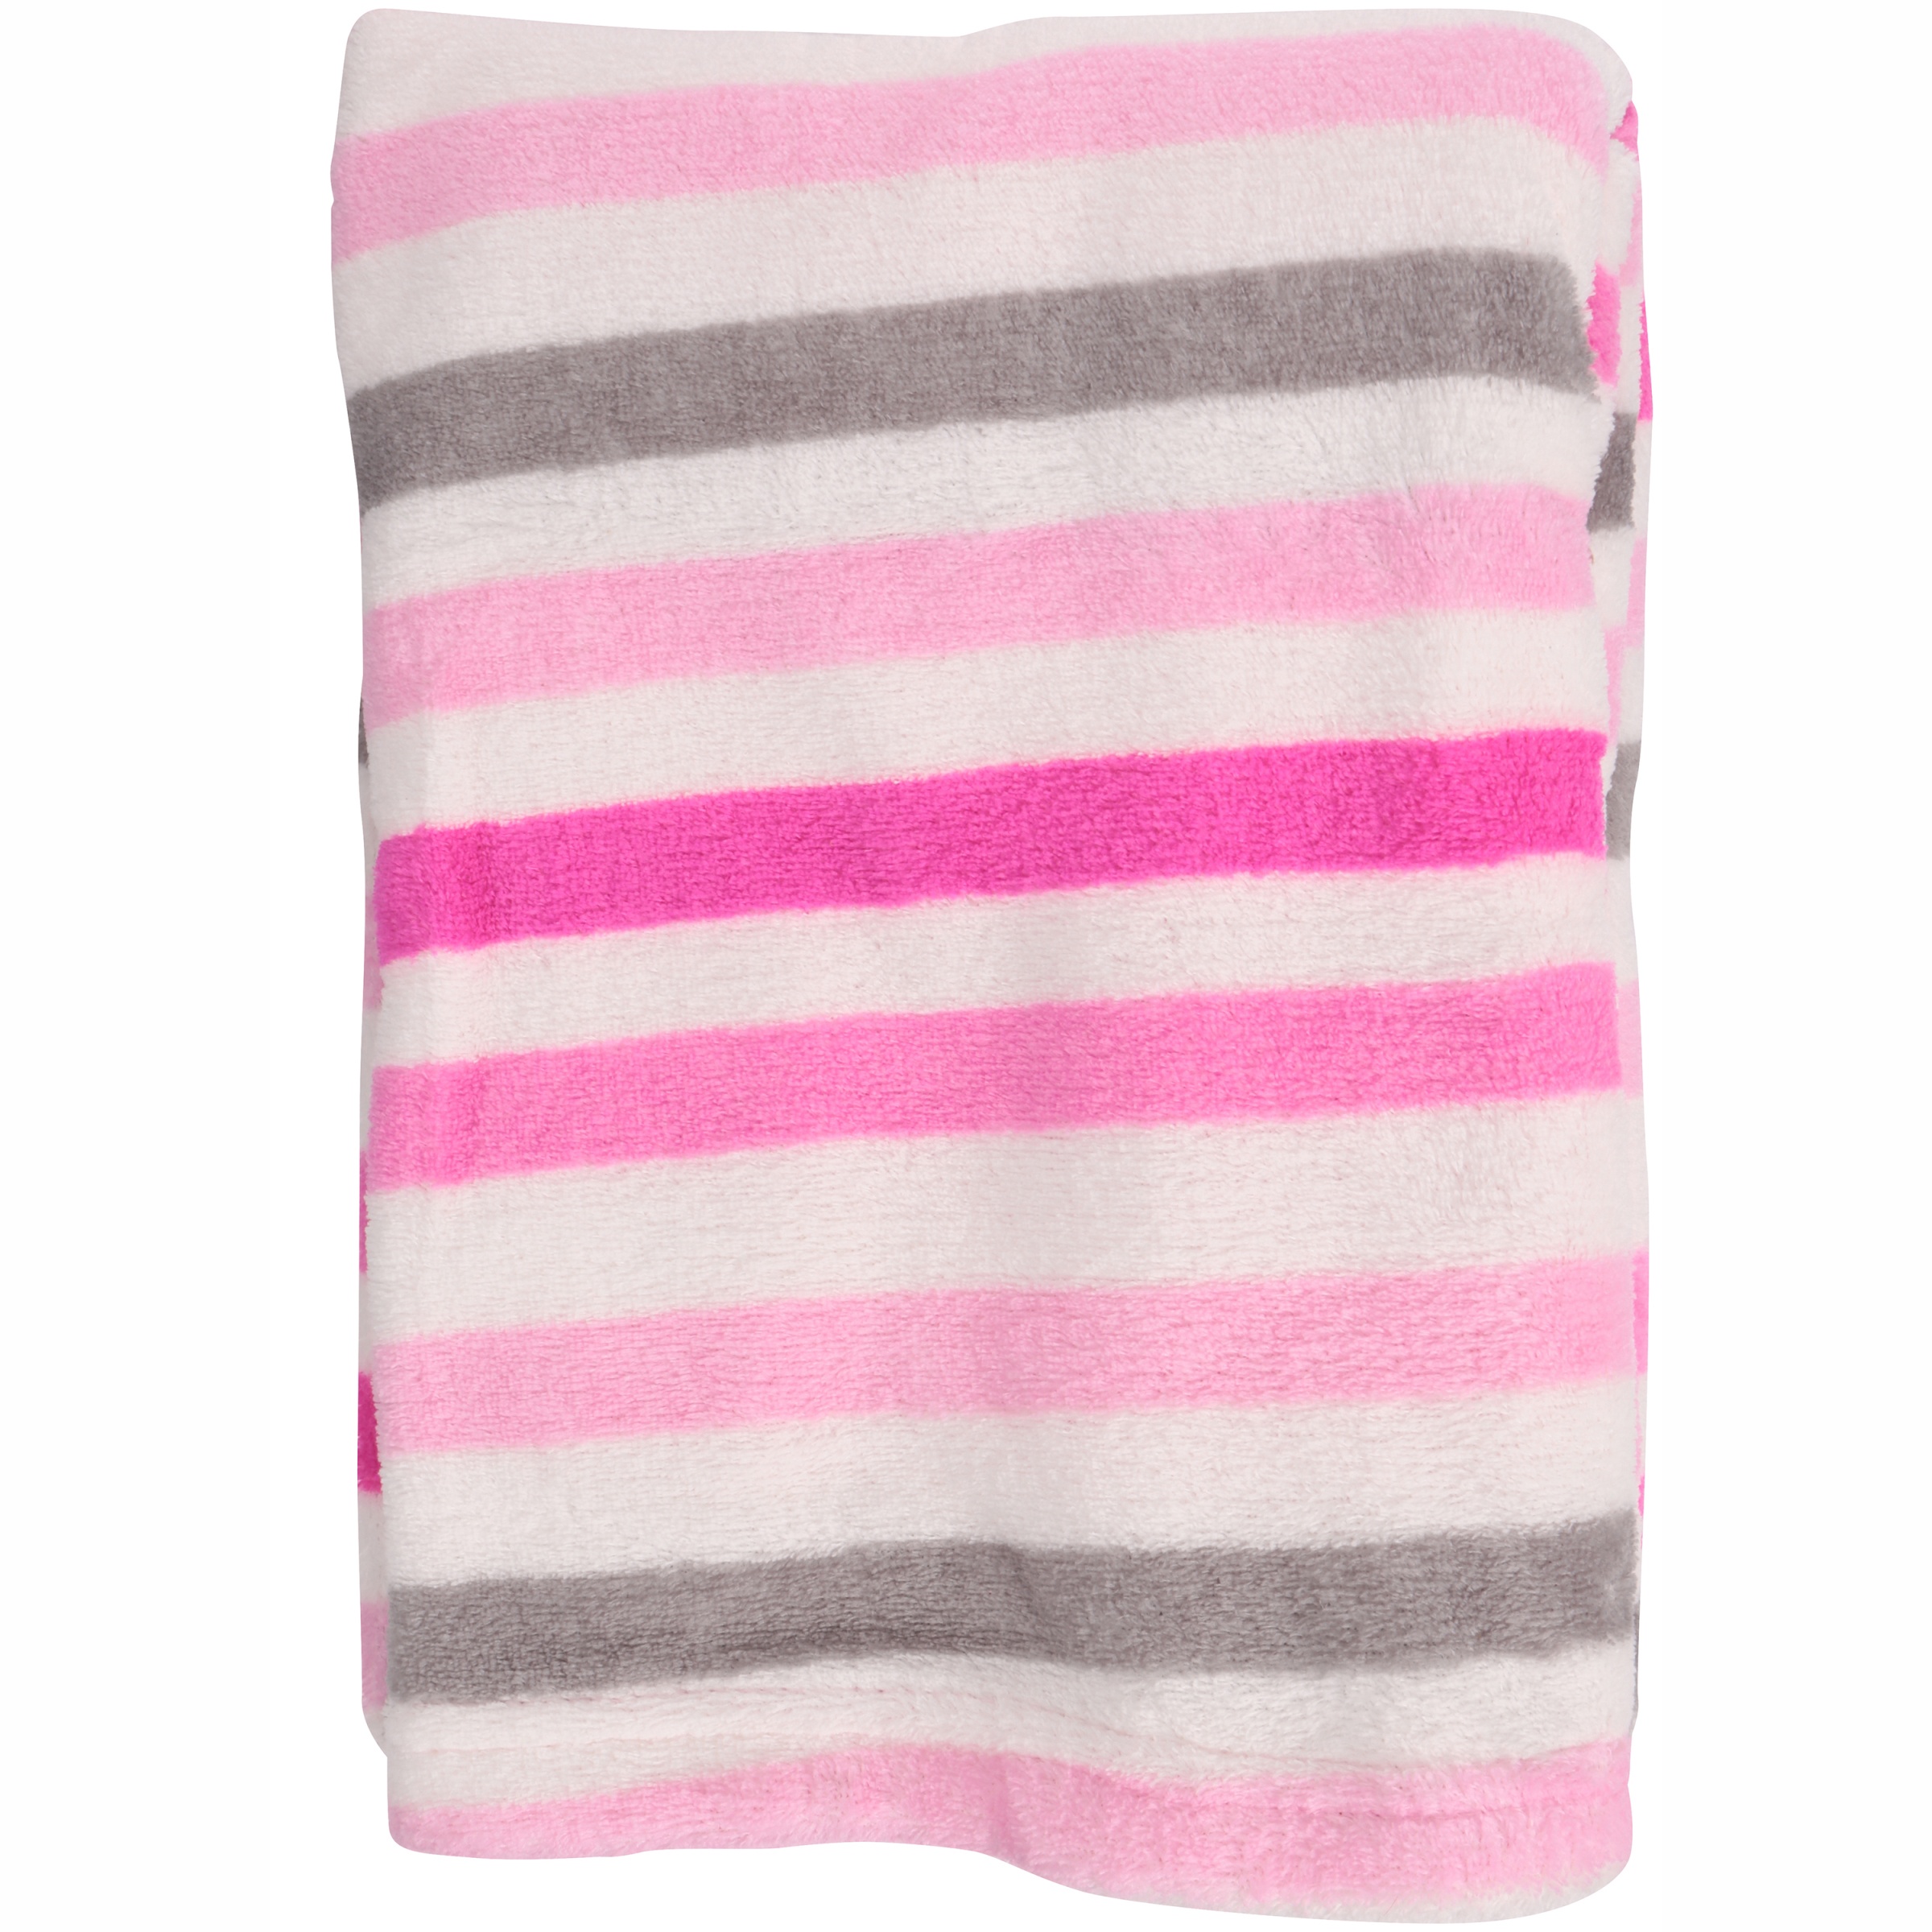 Little Starter Female Plush Blanket Pink 95% Plush Crib Blanket - image 2 of 3